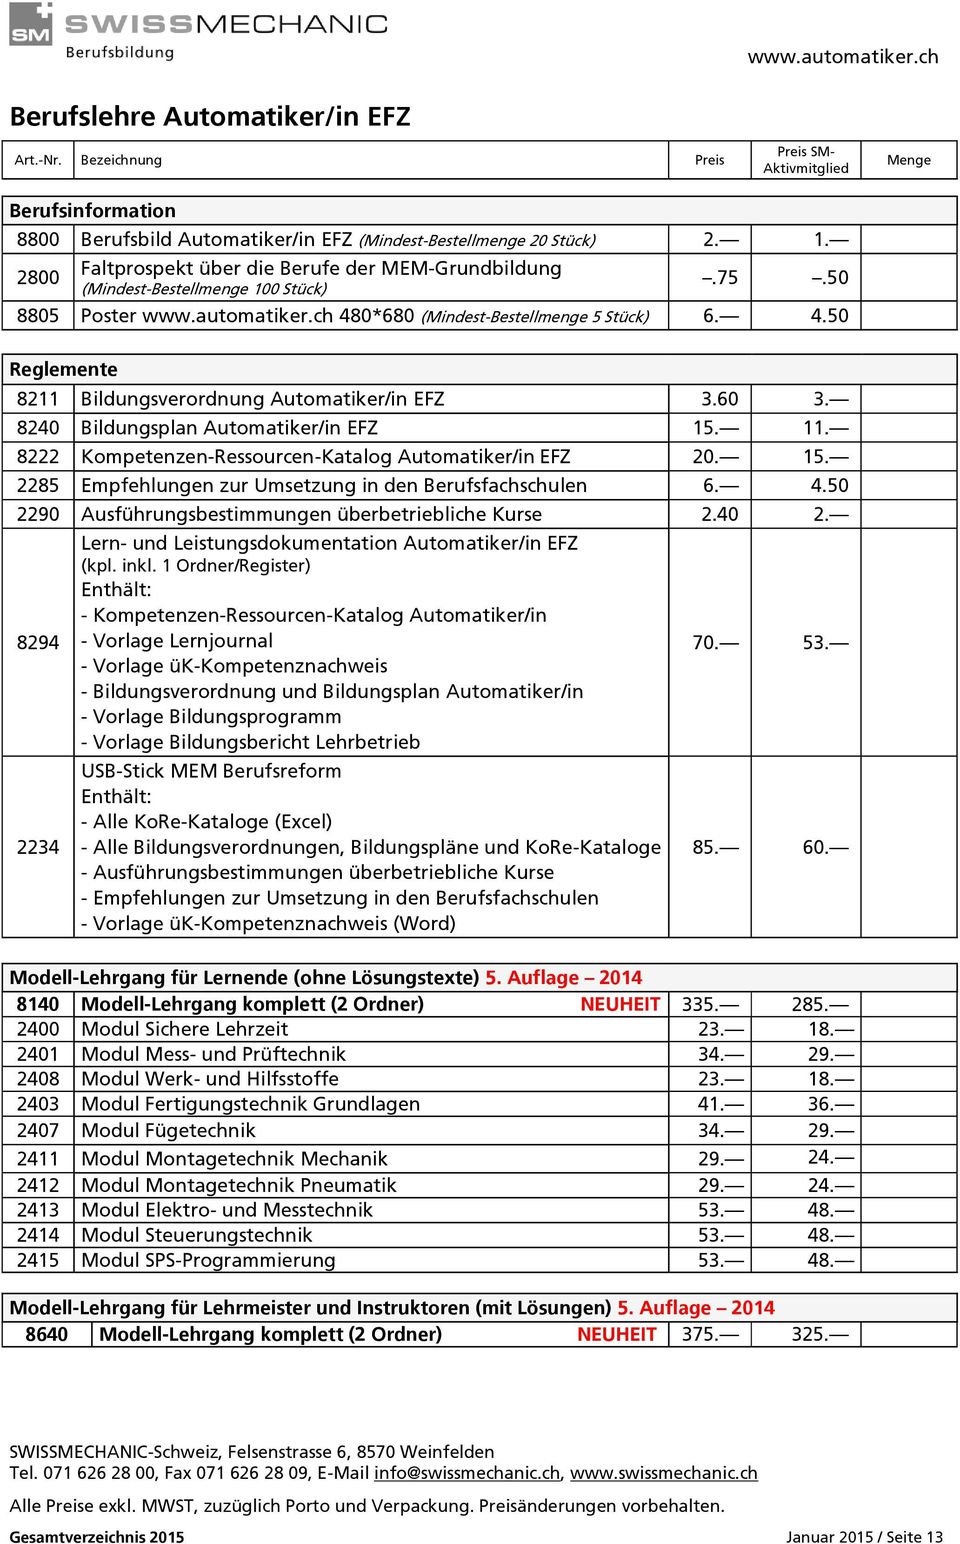 60 3. 8240 Bildungsplan Automatiker/in EFZ 15. 11. 8222 Kompetenzen-Ressourcen-Katalog Automatiker/in EFZ 20. 15. 2285 Empfehlungen zur Umsetzung in den Berufsfachschulen 6. 4.